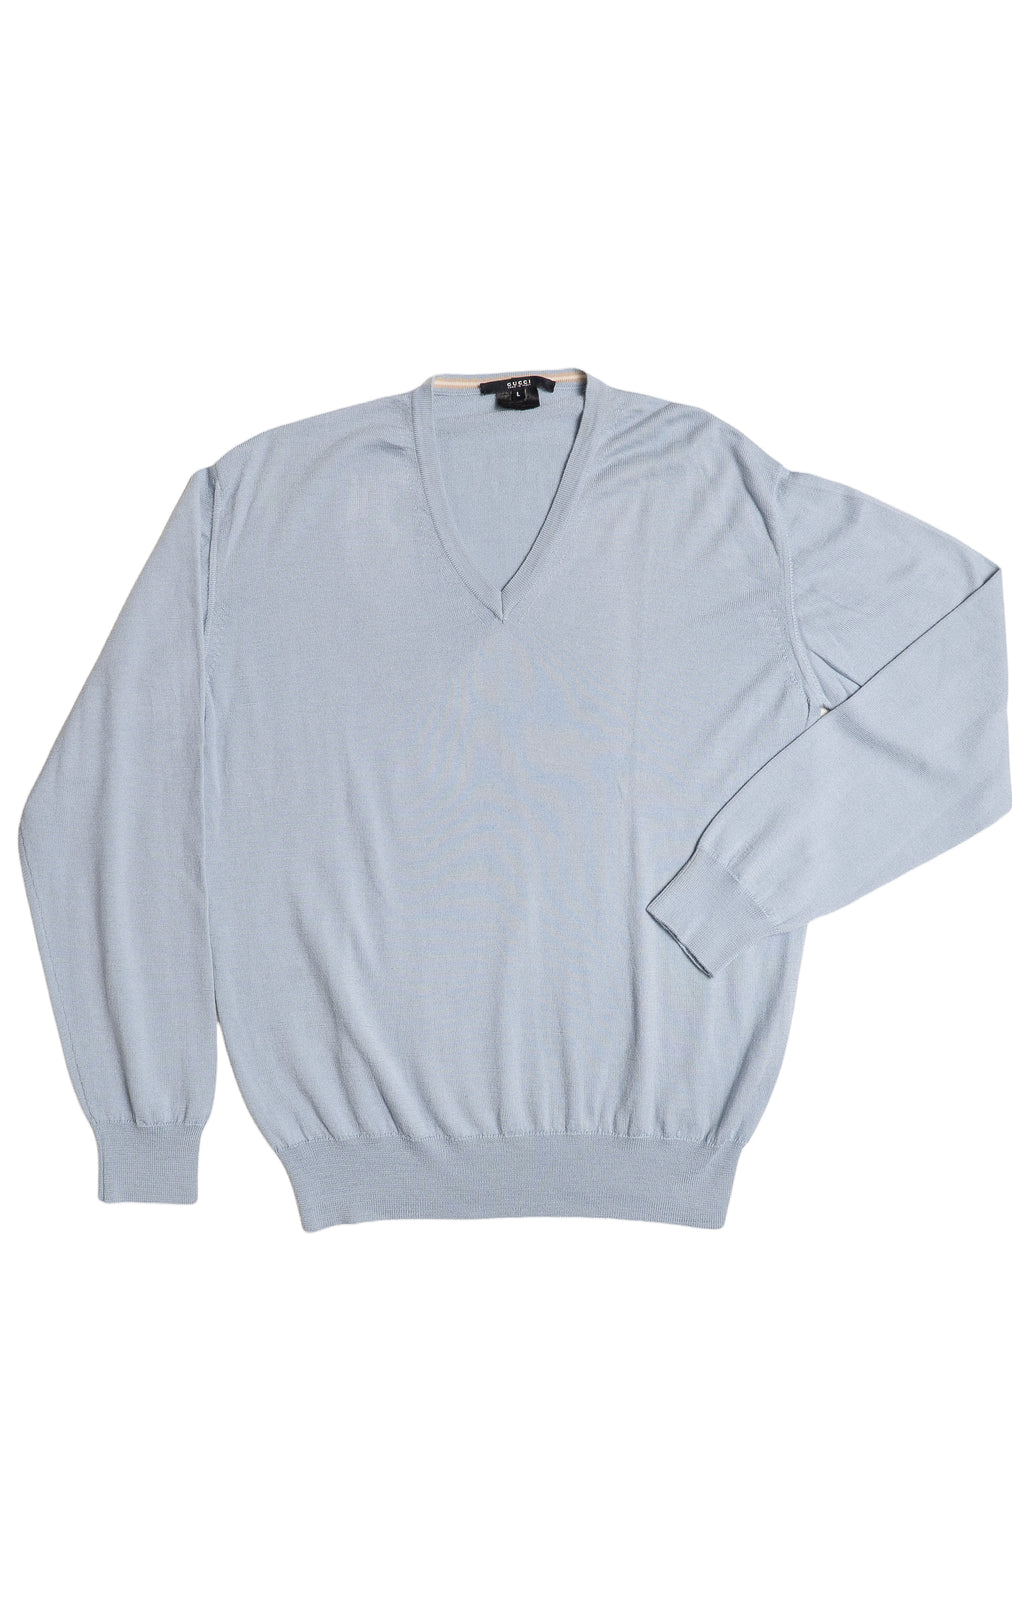 GUCCI Sweater Size: L